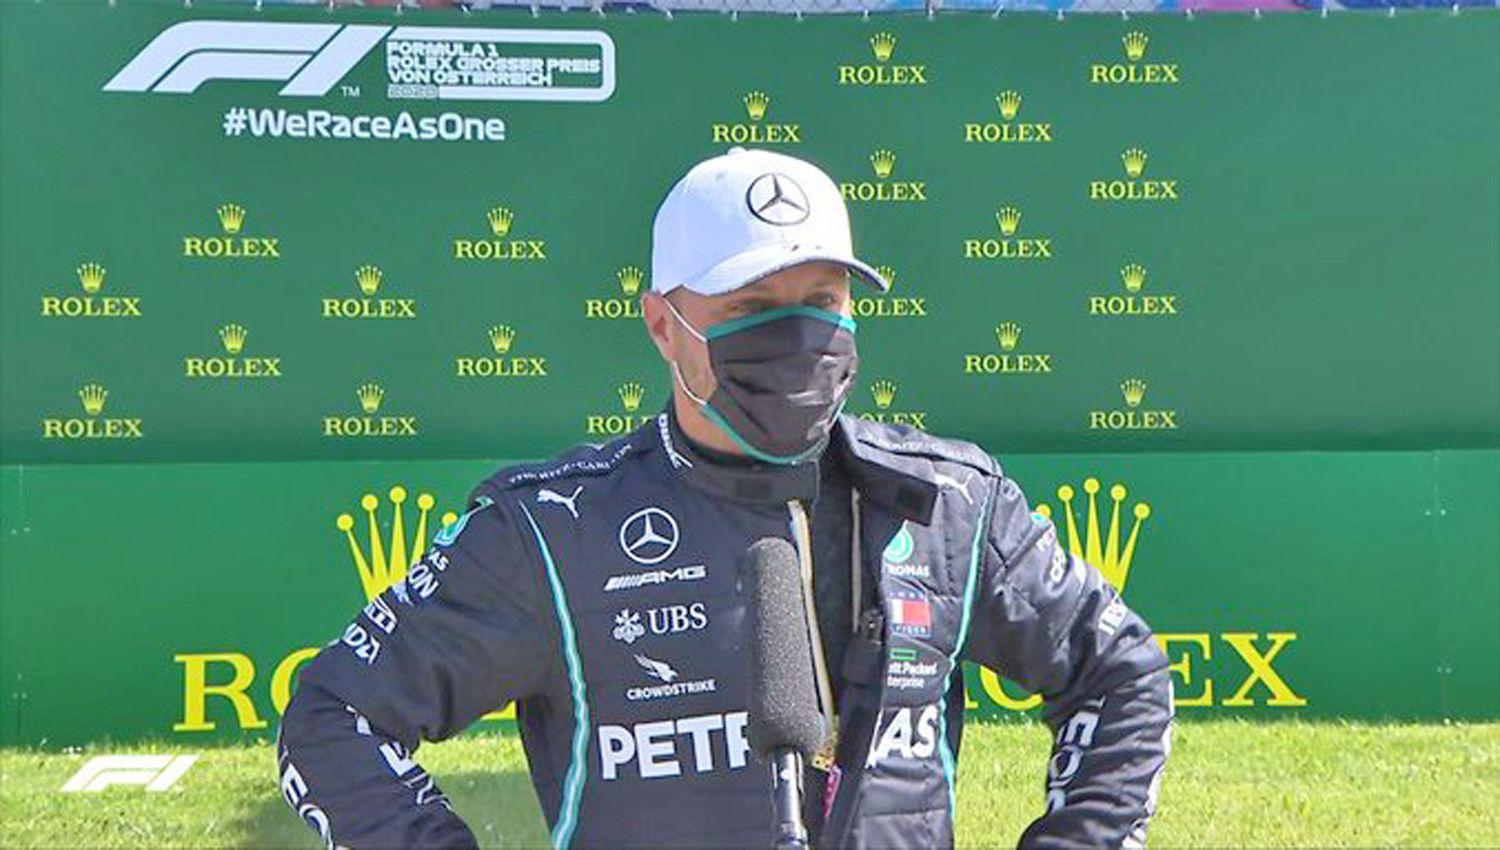 Tanto el piloto de Mercedes Bottas (en la foto) como el de Ferrari Leclerc se volvieron a sus casas y rompieron el protocolo